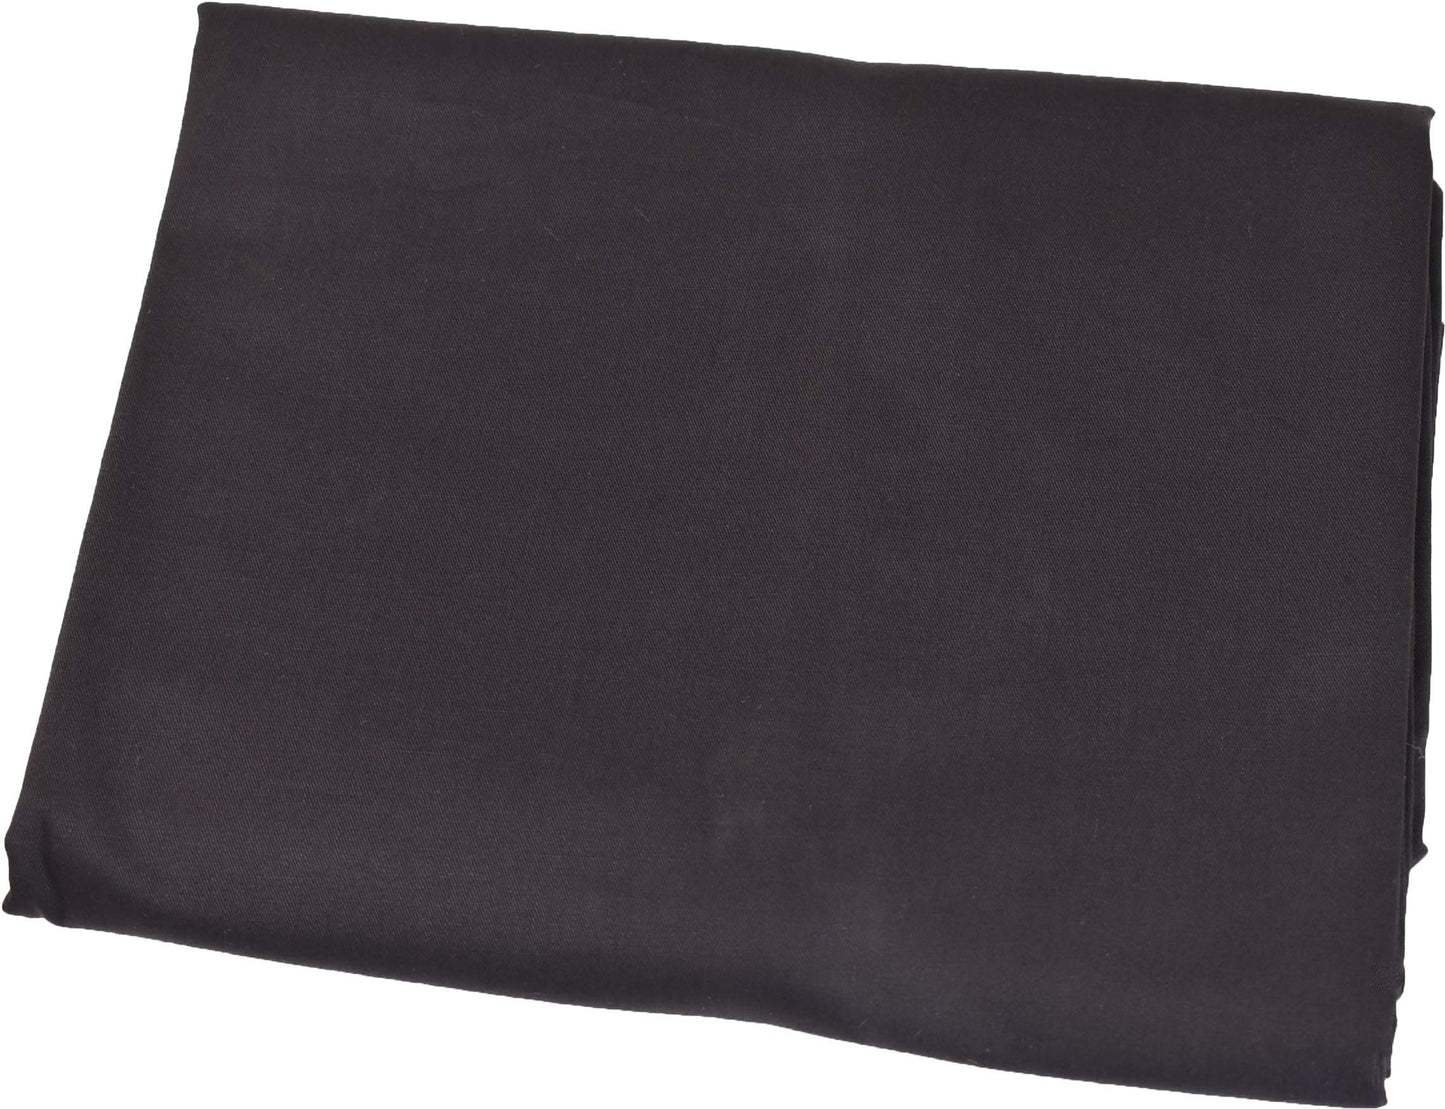 MoonRest Body Pillow Pillowcase Luxury High Count Thread with Hidden Zipper -%100 Cotton